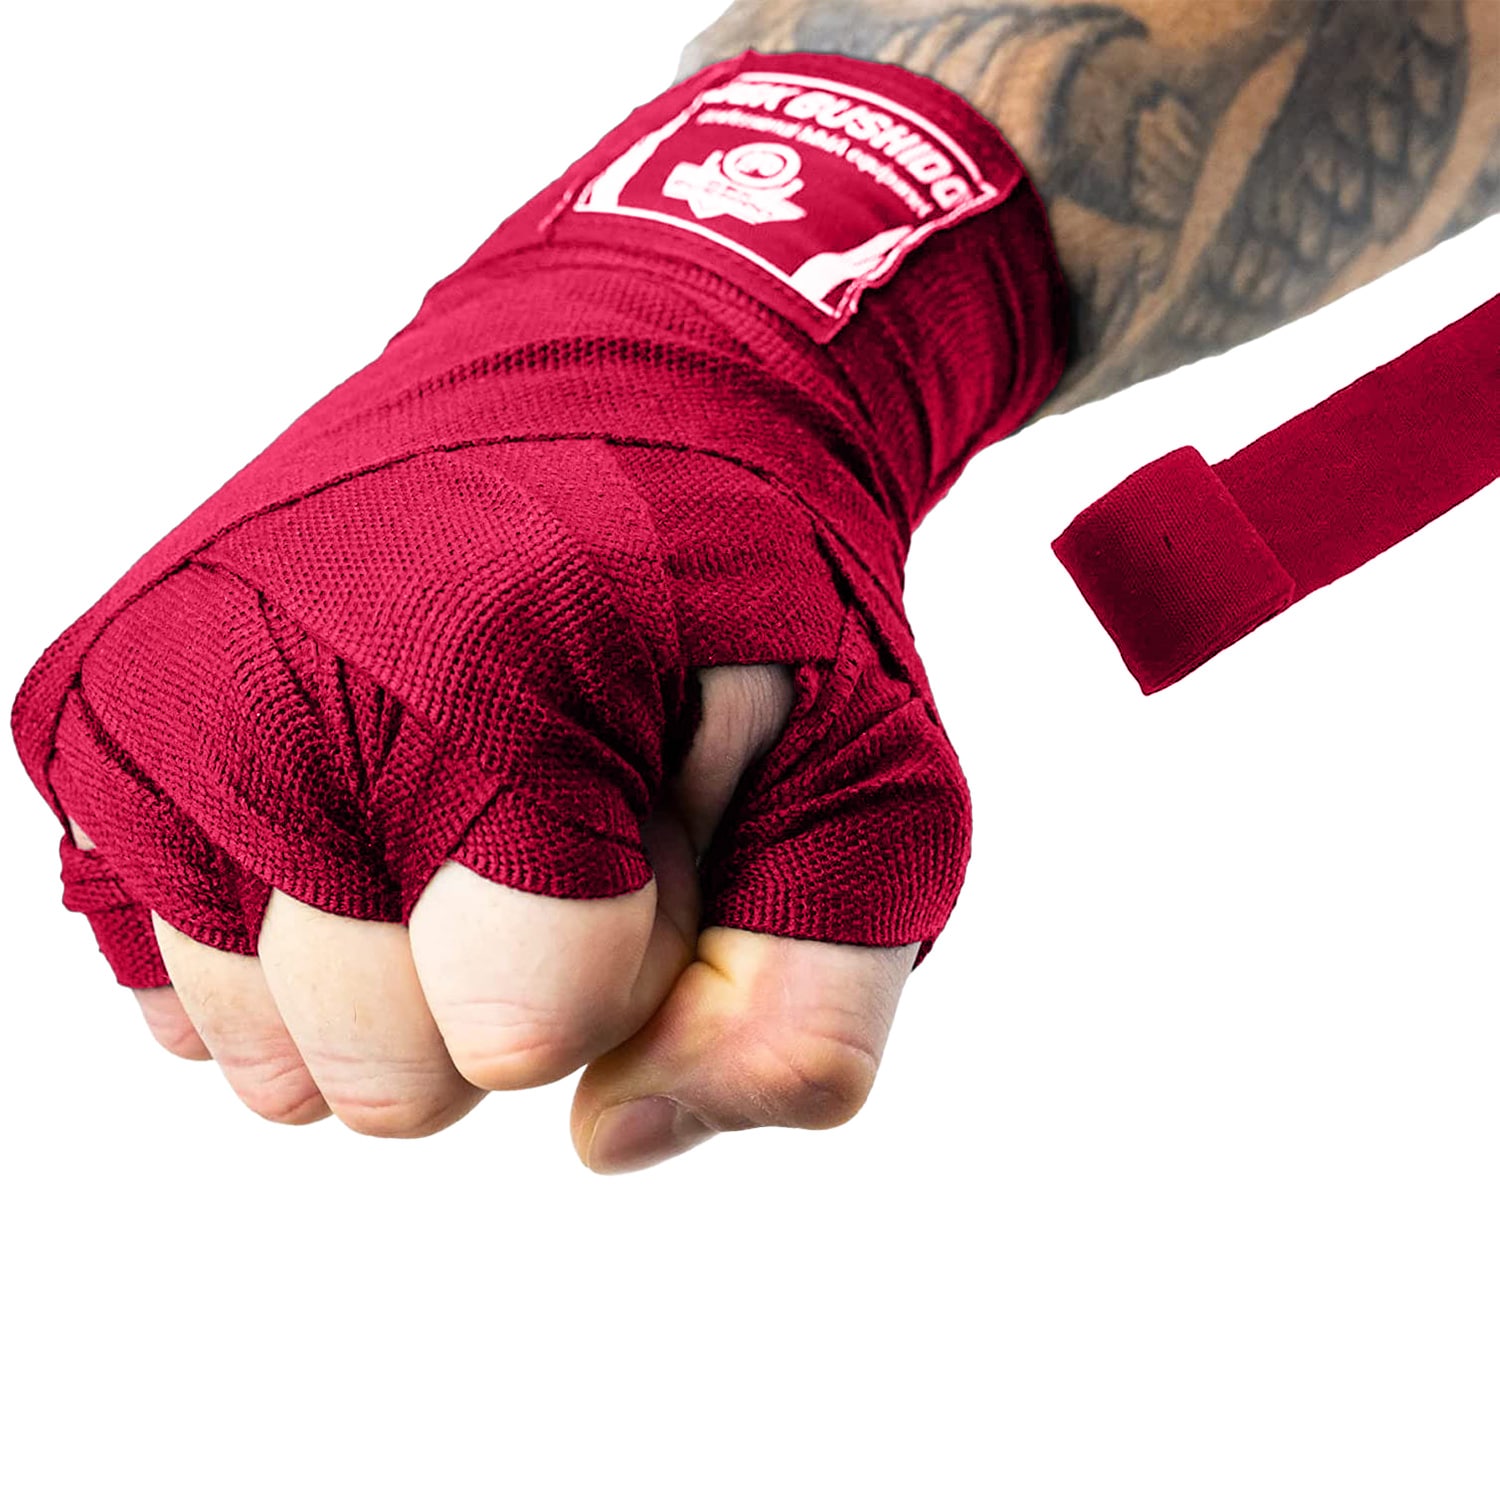 Bandaże bokserskie DBX Bushido na dłonie i nadgarstki 2 x 4 m - Czerwone